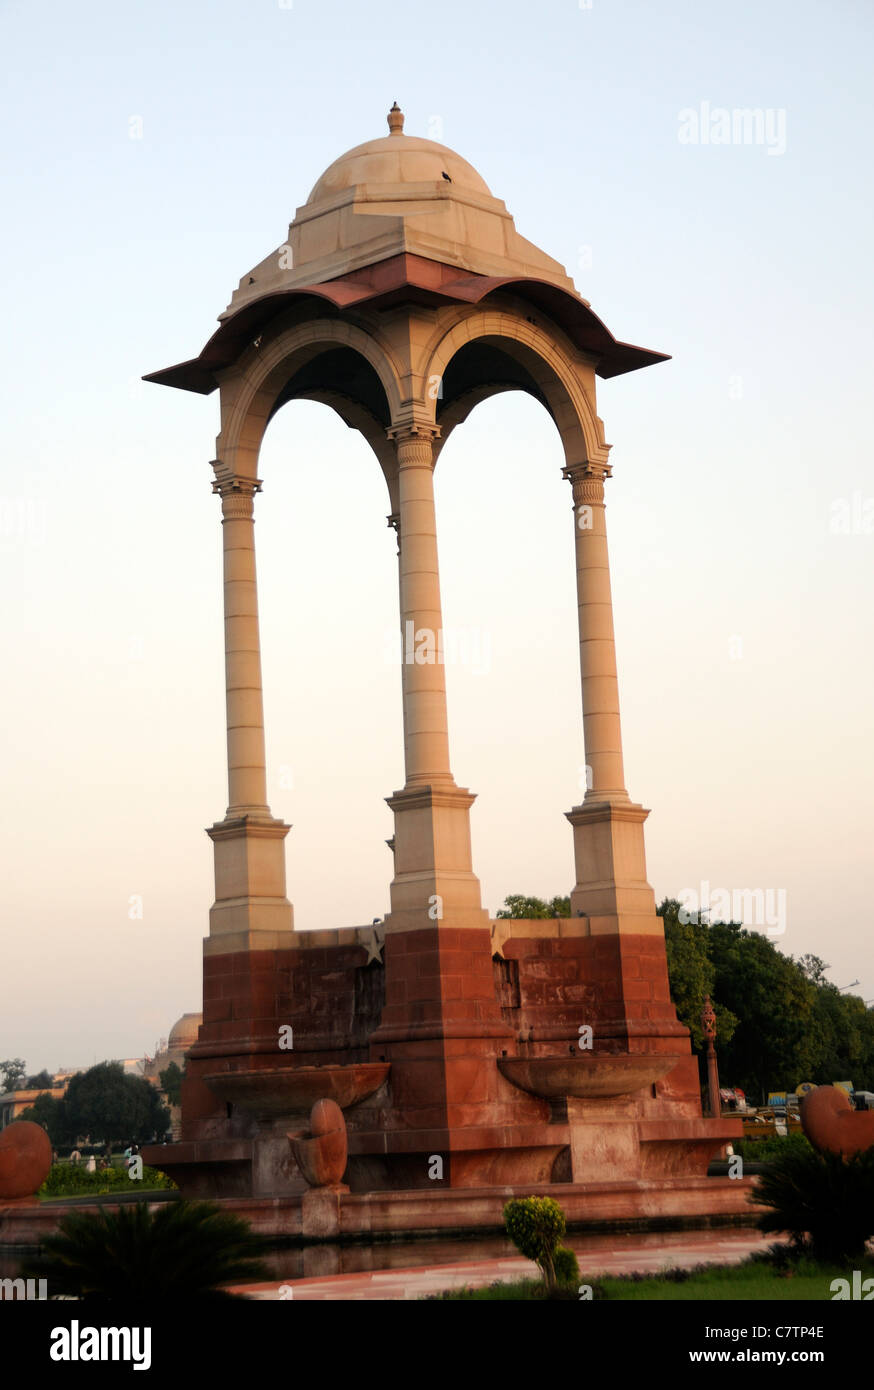 Tettoia di vuoto di fronte al memoriale di Delhi, India Gate, dove una volta sorgeva una statua di Re George V. L'India Gate, Rajpath, Delhi Foto Stock